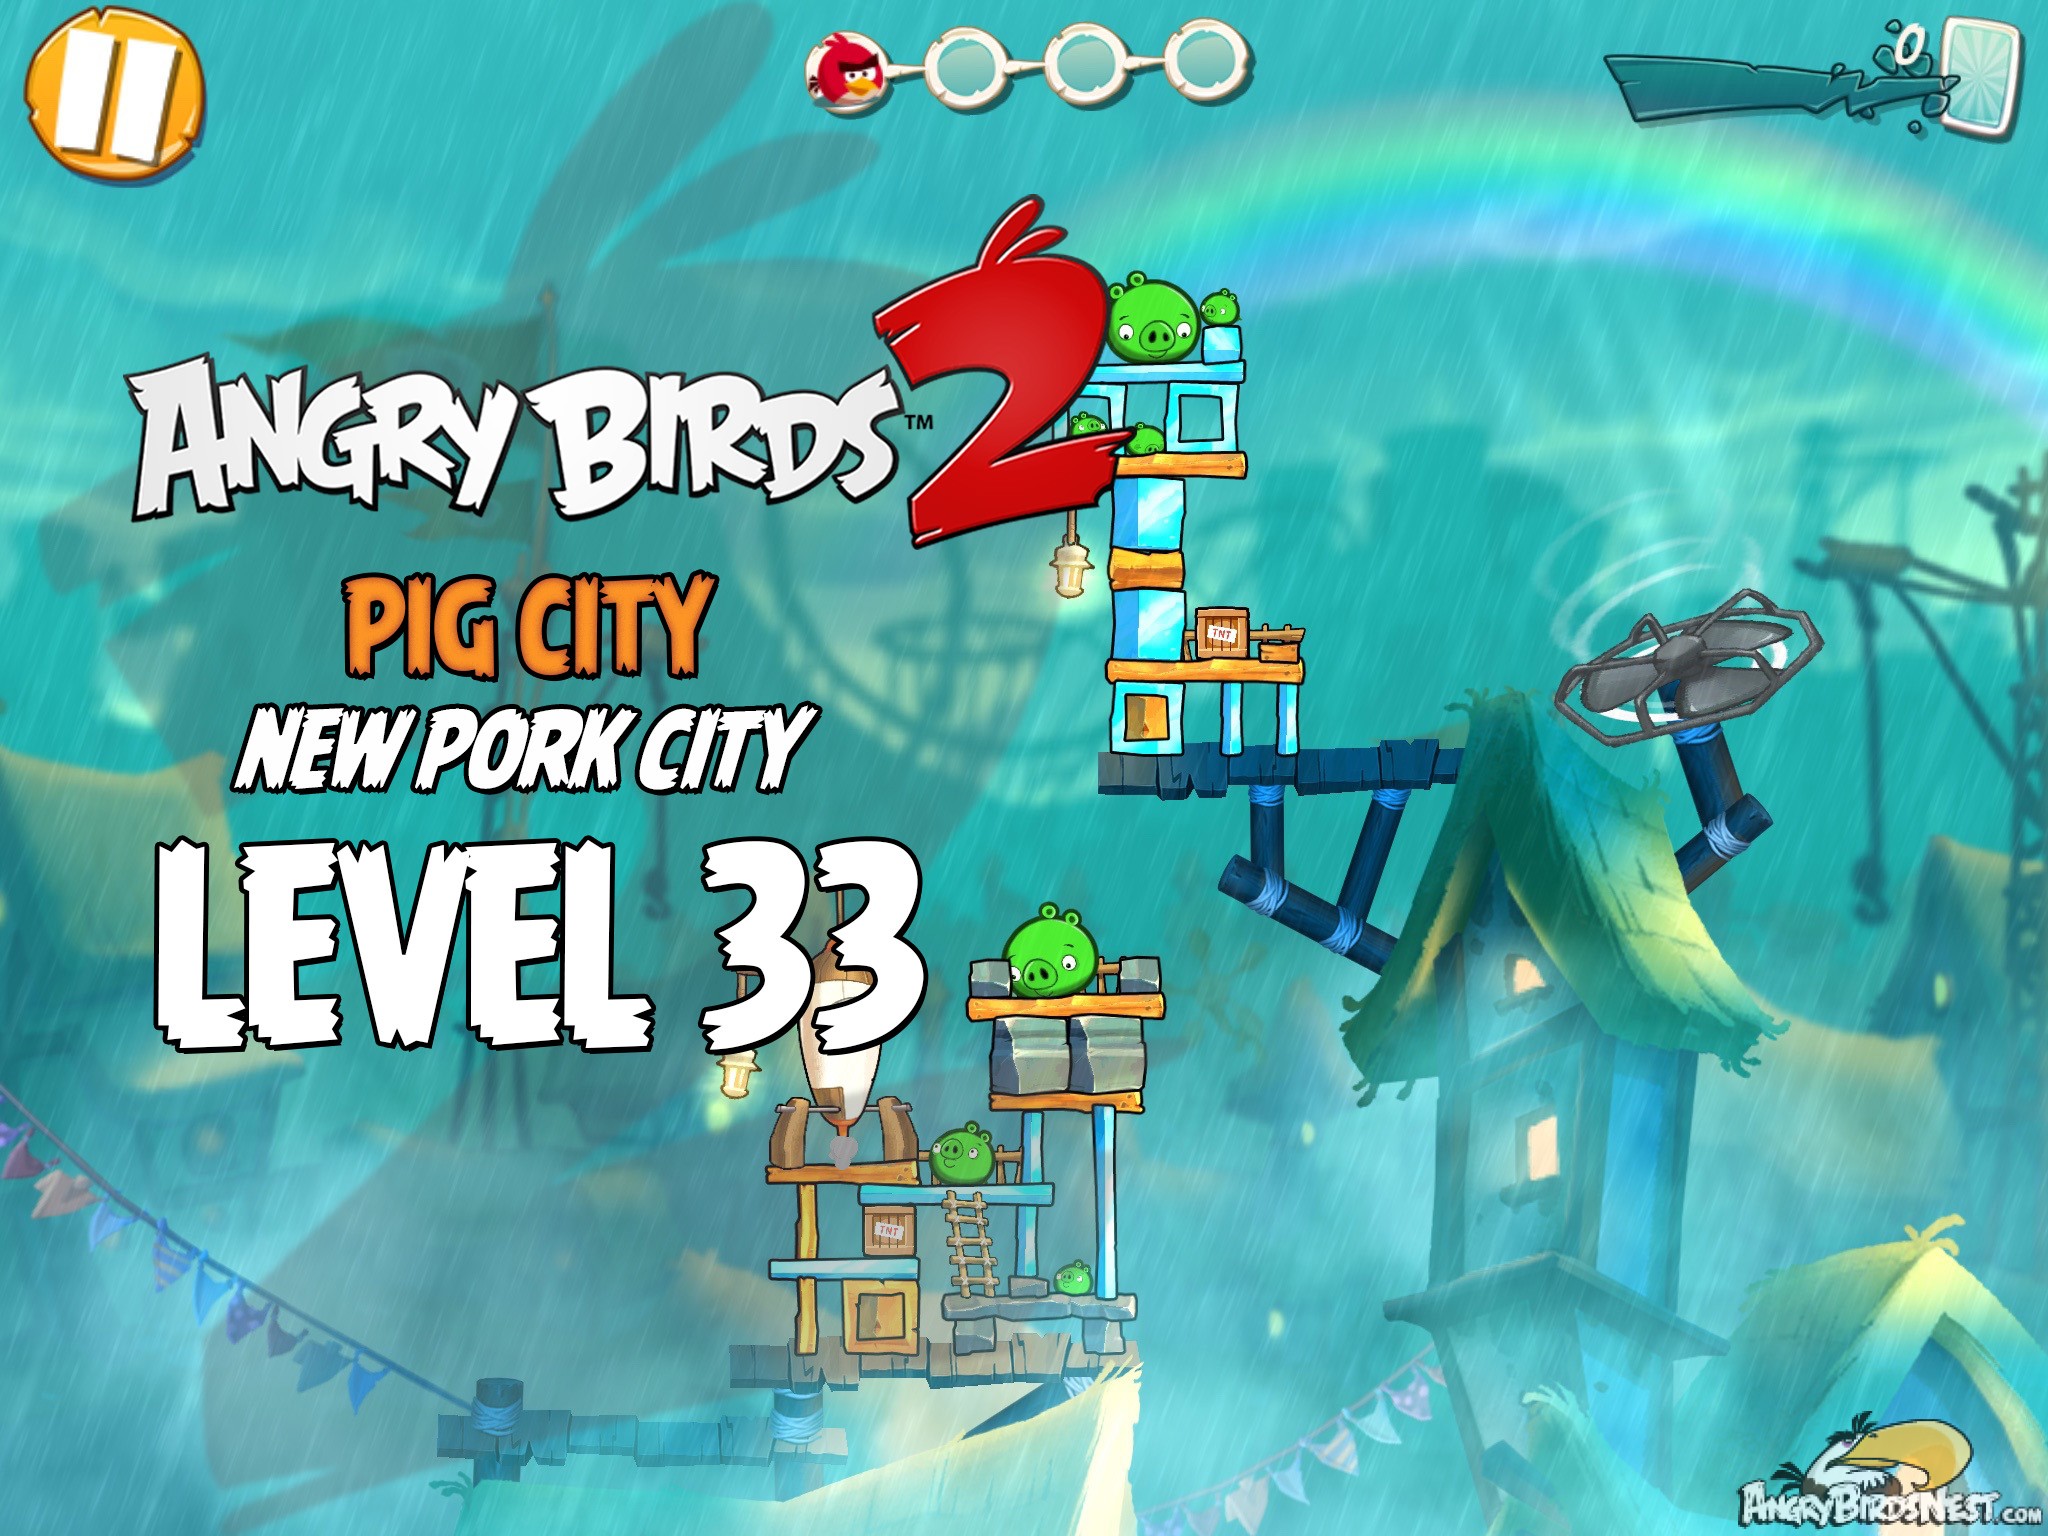 Angry Birds 2 Pig City New Pork City Level 33